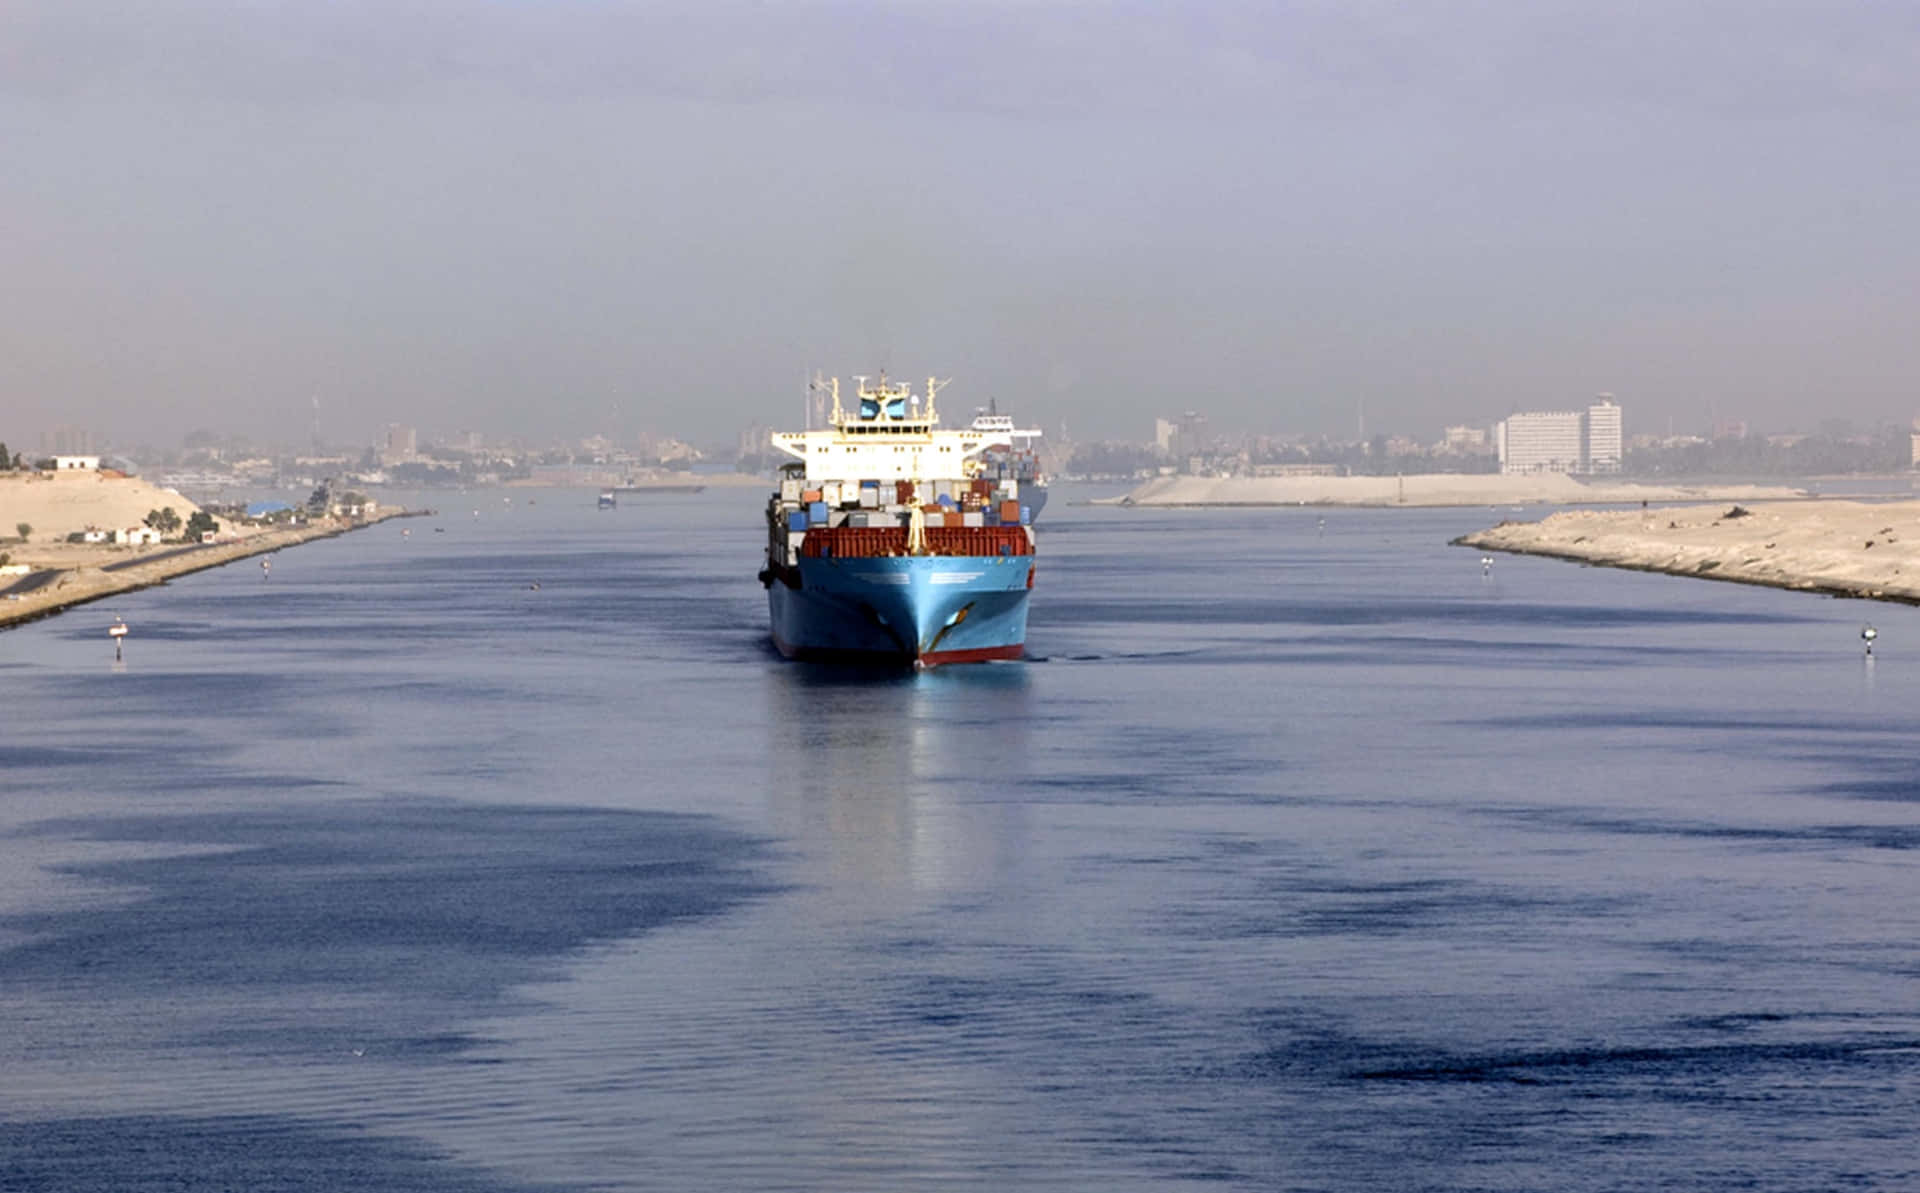 Fotografiaincrível Do Canal De Suez.